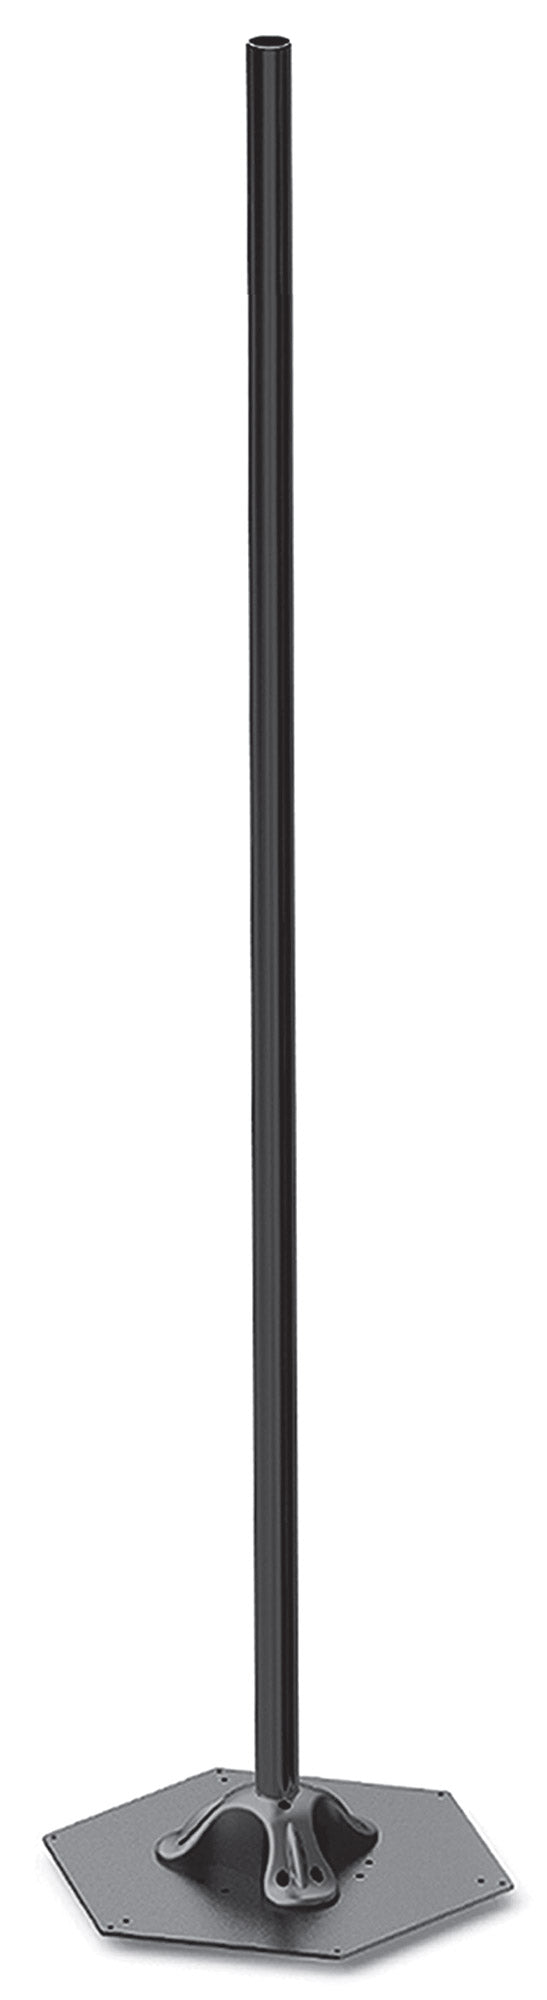 online Elegance Pole H214 cm pour Lampes Chauffantes Electriques Moel 4464 Noir